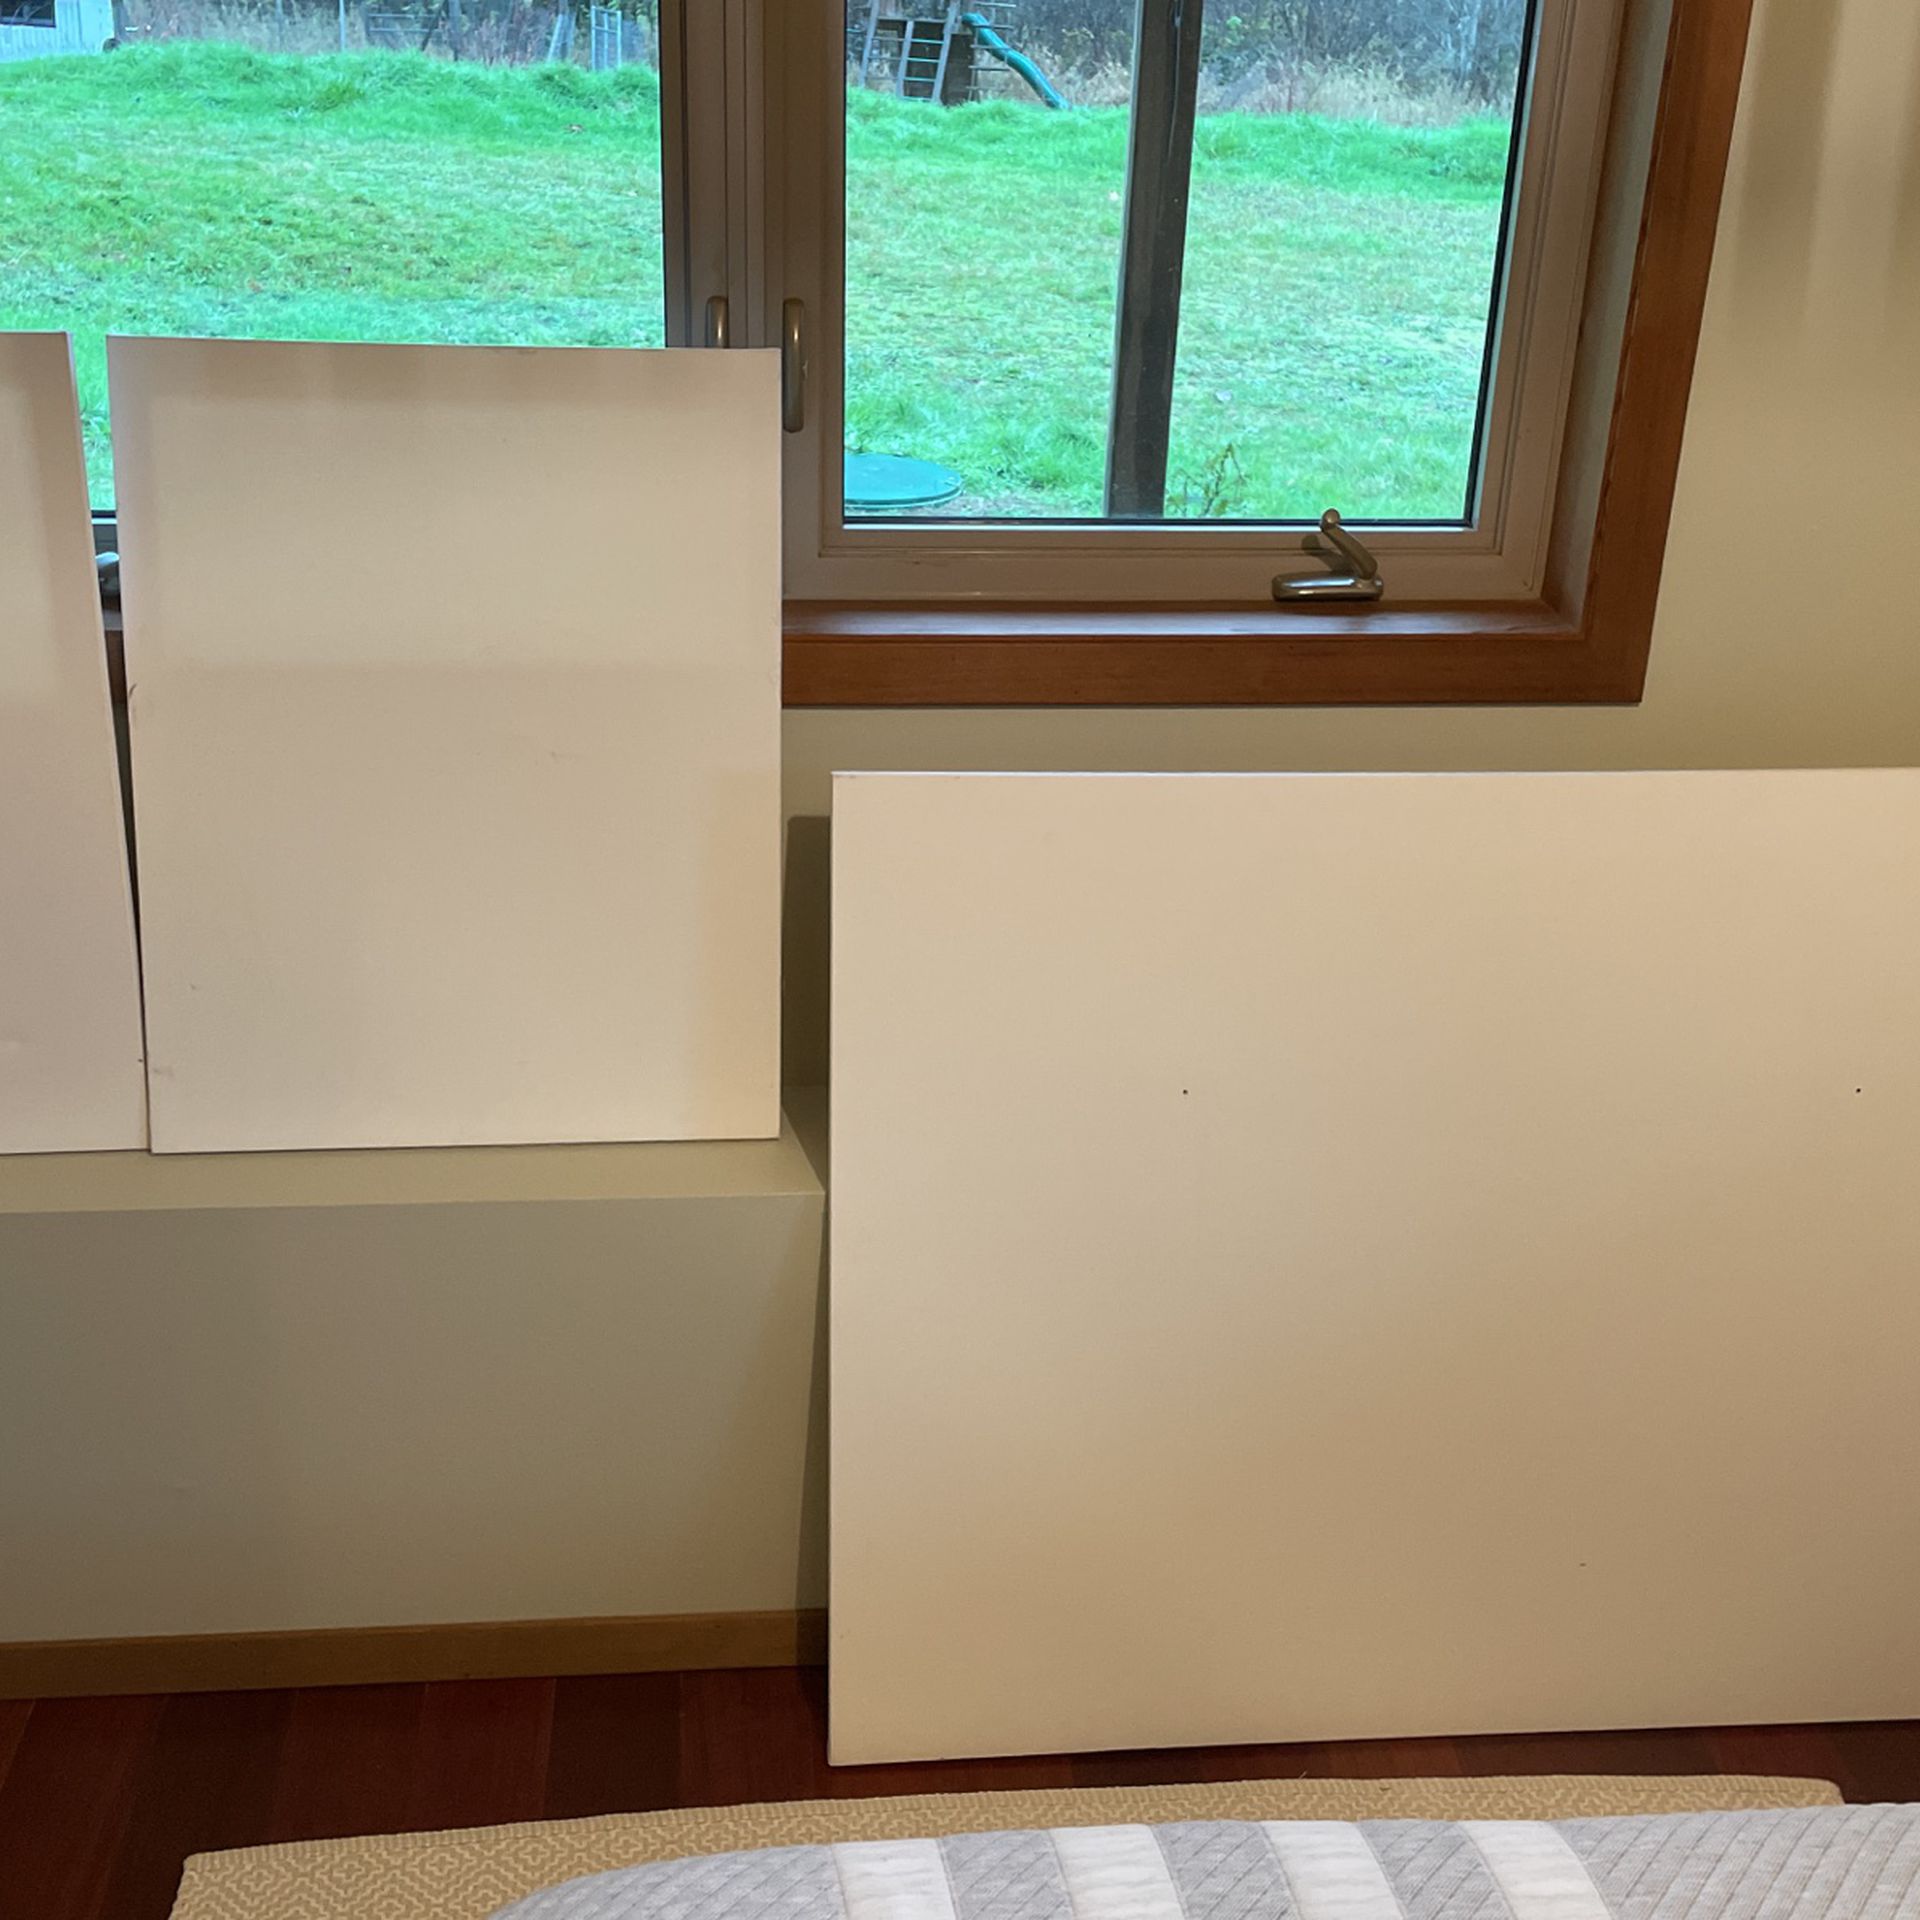 3 Blank Canvas, 2’9”x3’5” & 2’4”x1’11”